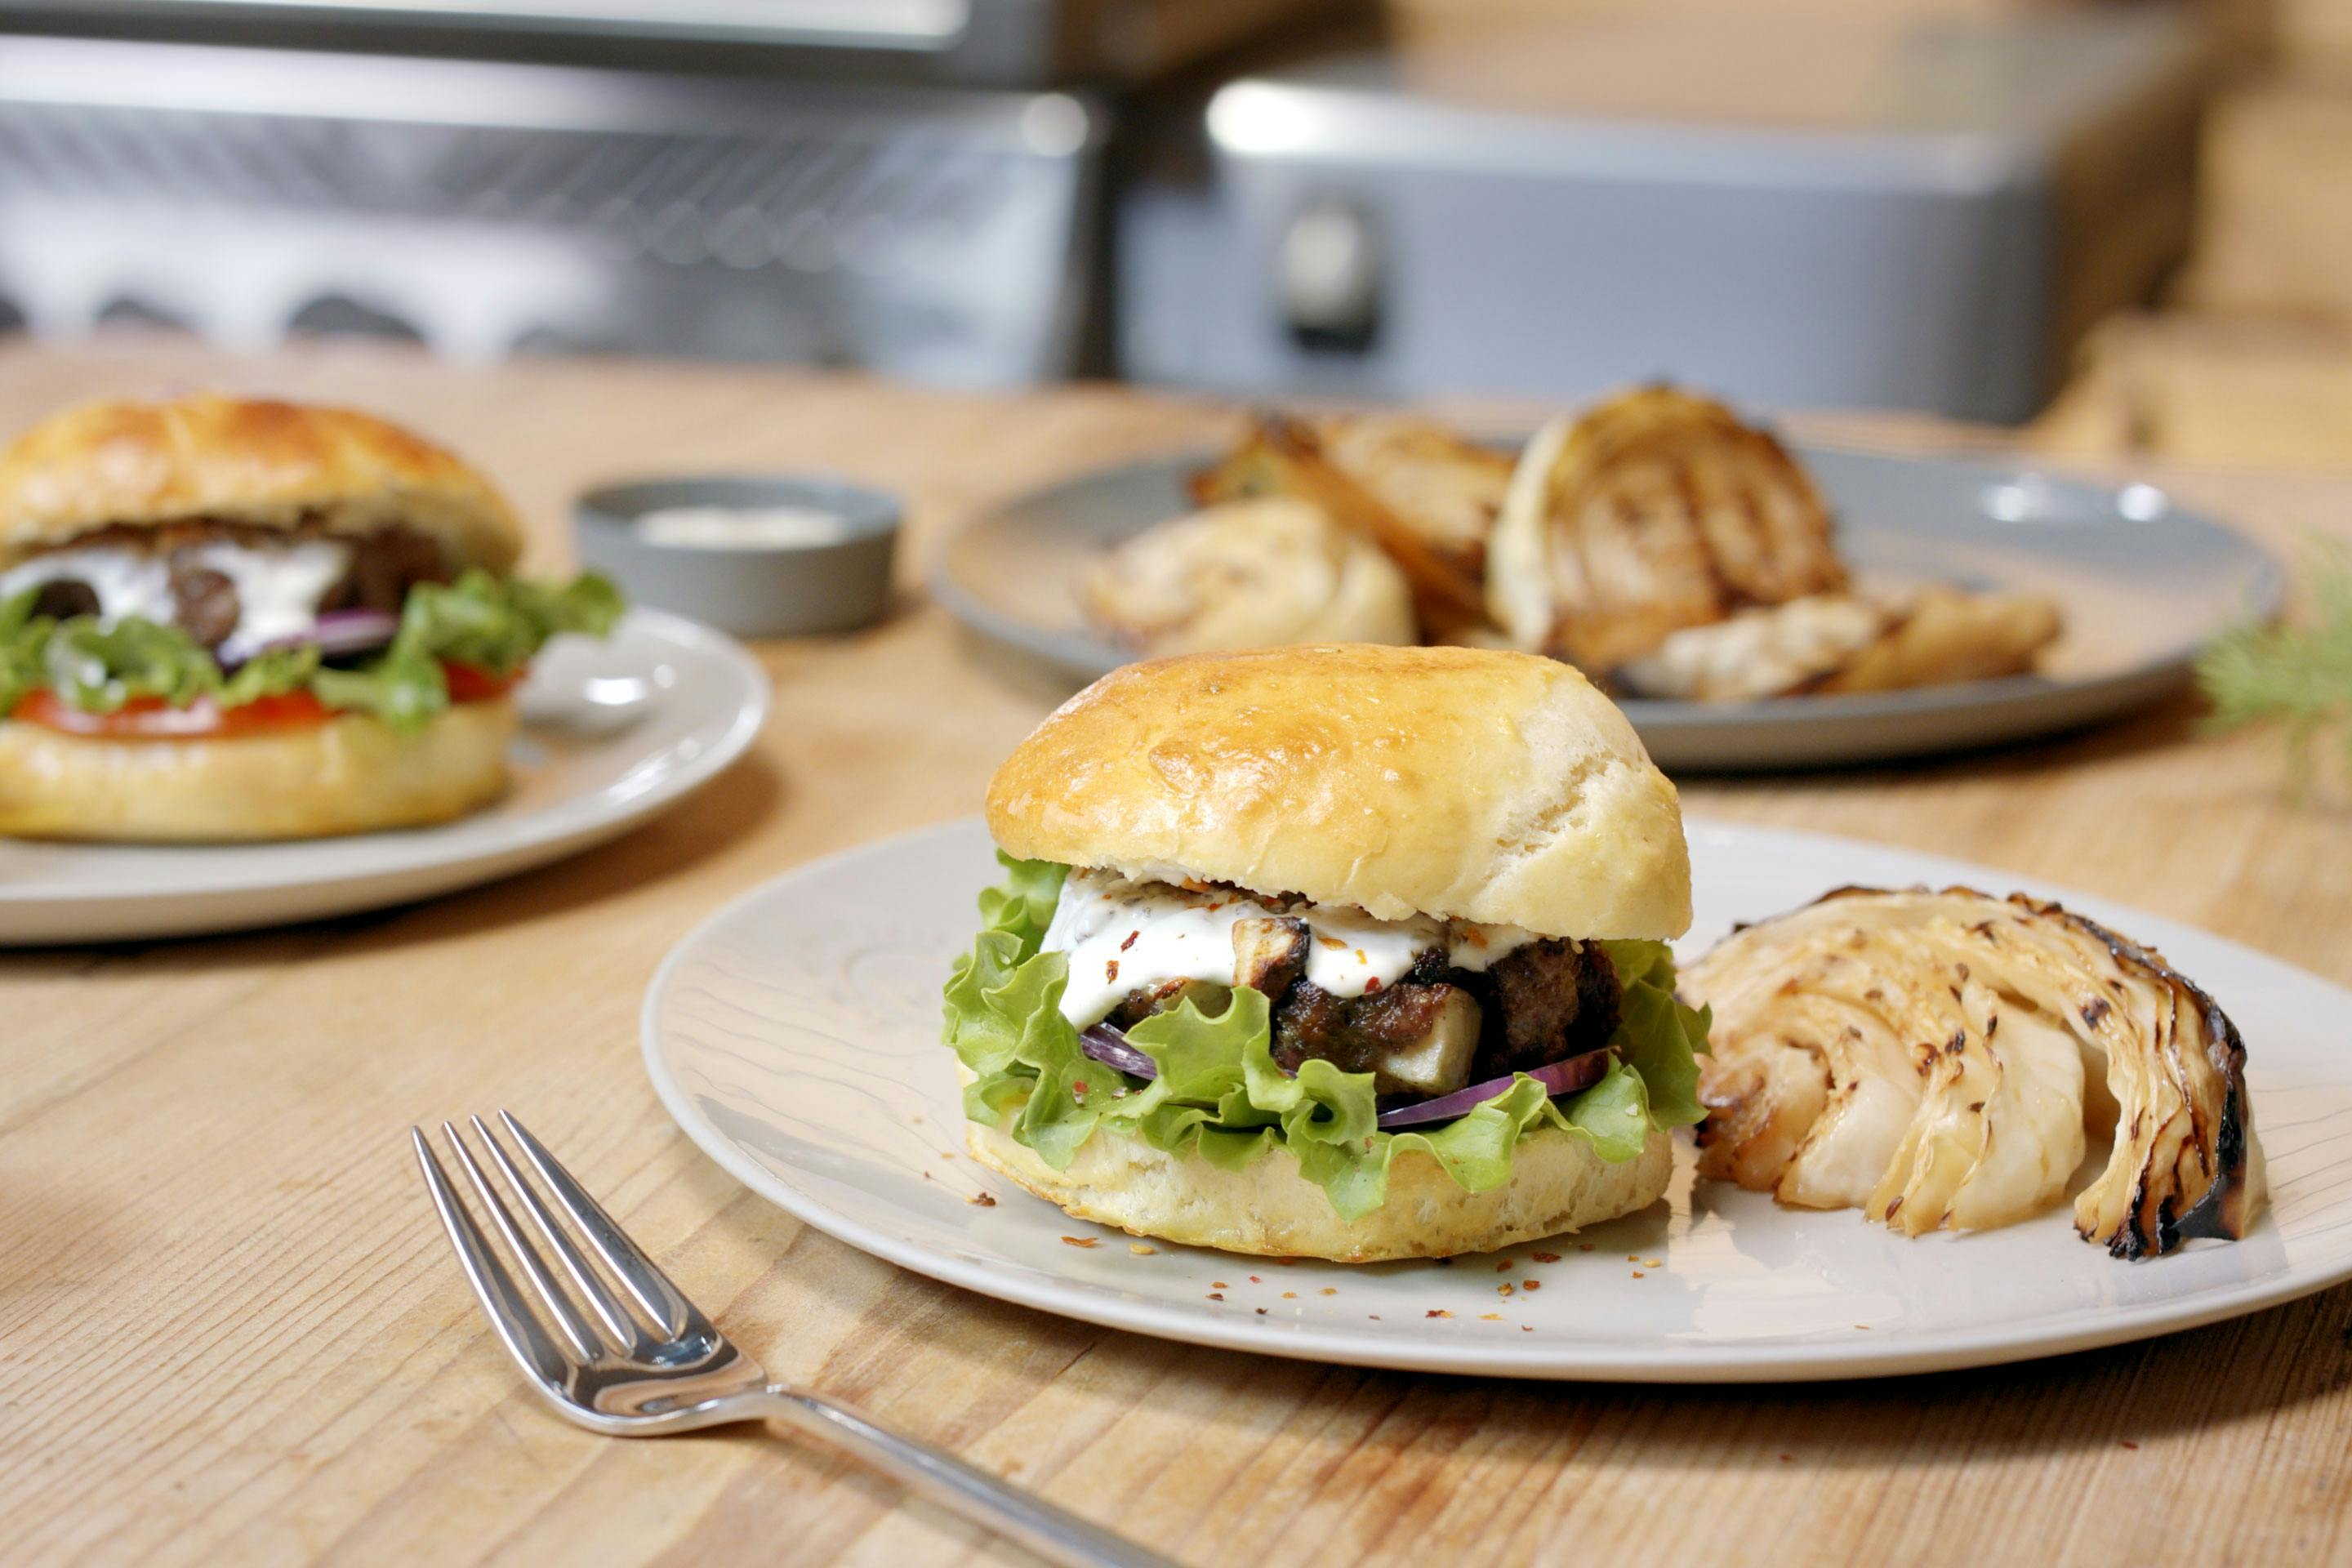 Burger mitKäse-Röstzwiebel-Patty und gegrilltem Krautkopf auf einem hellen Teller auf einem Holztisch